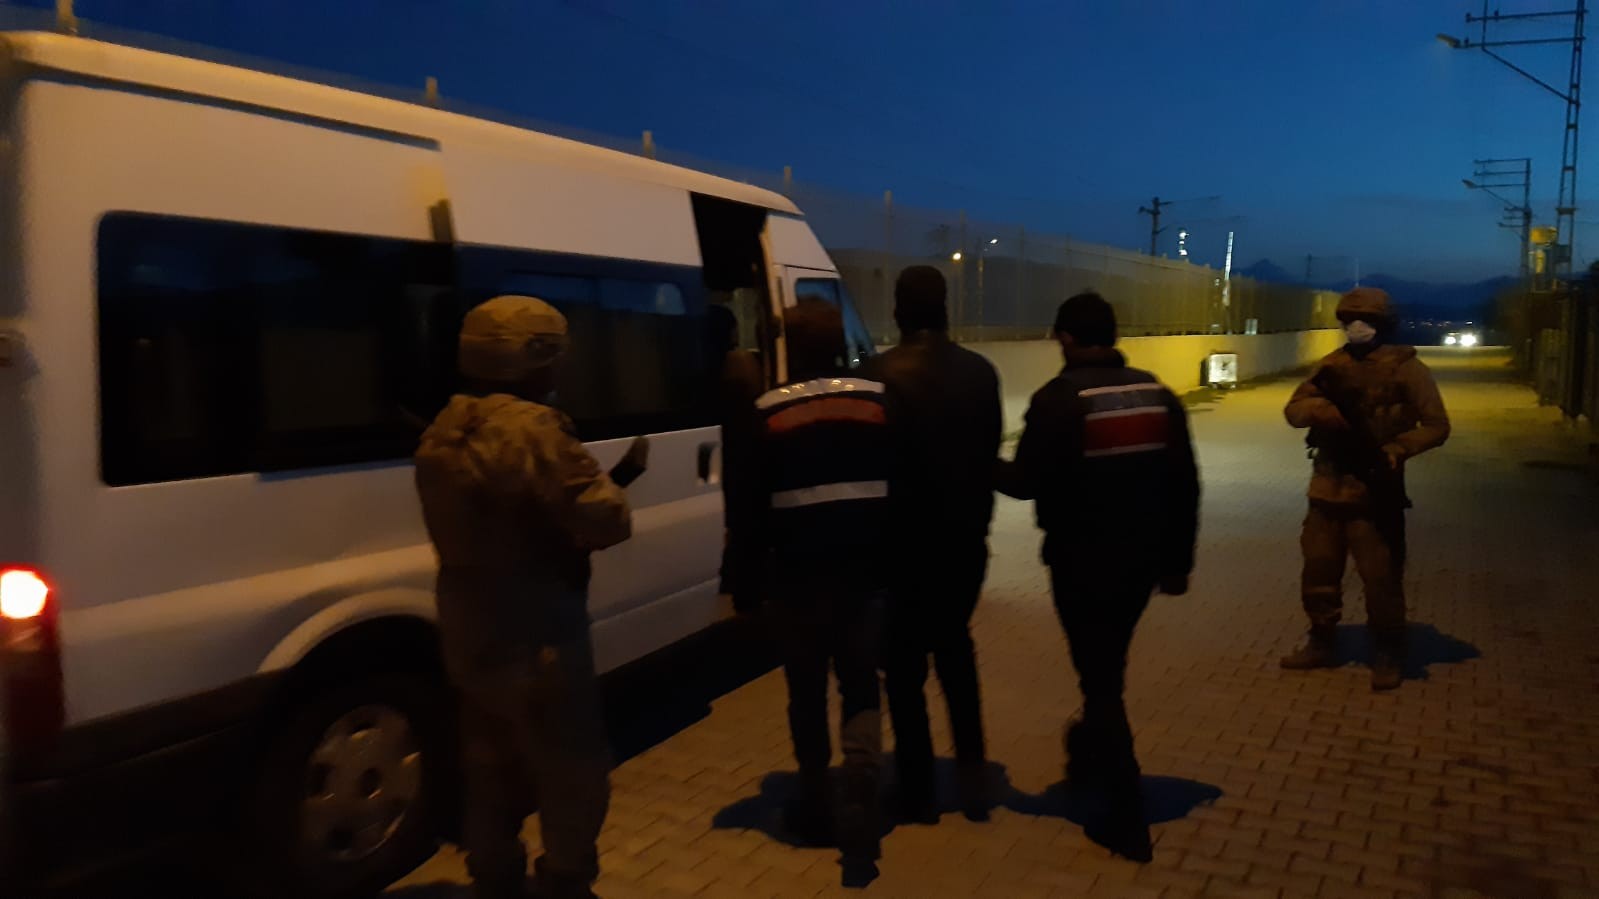 Osmaniye’de DEAŞ operasyonu: 6 gözaltı #osmaniye